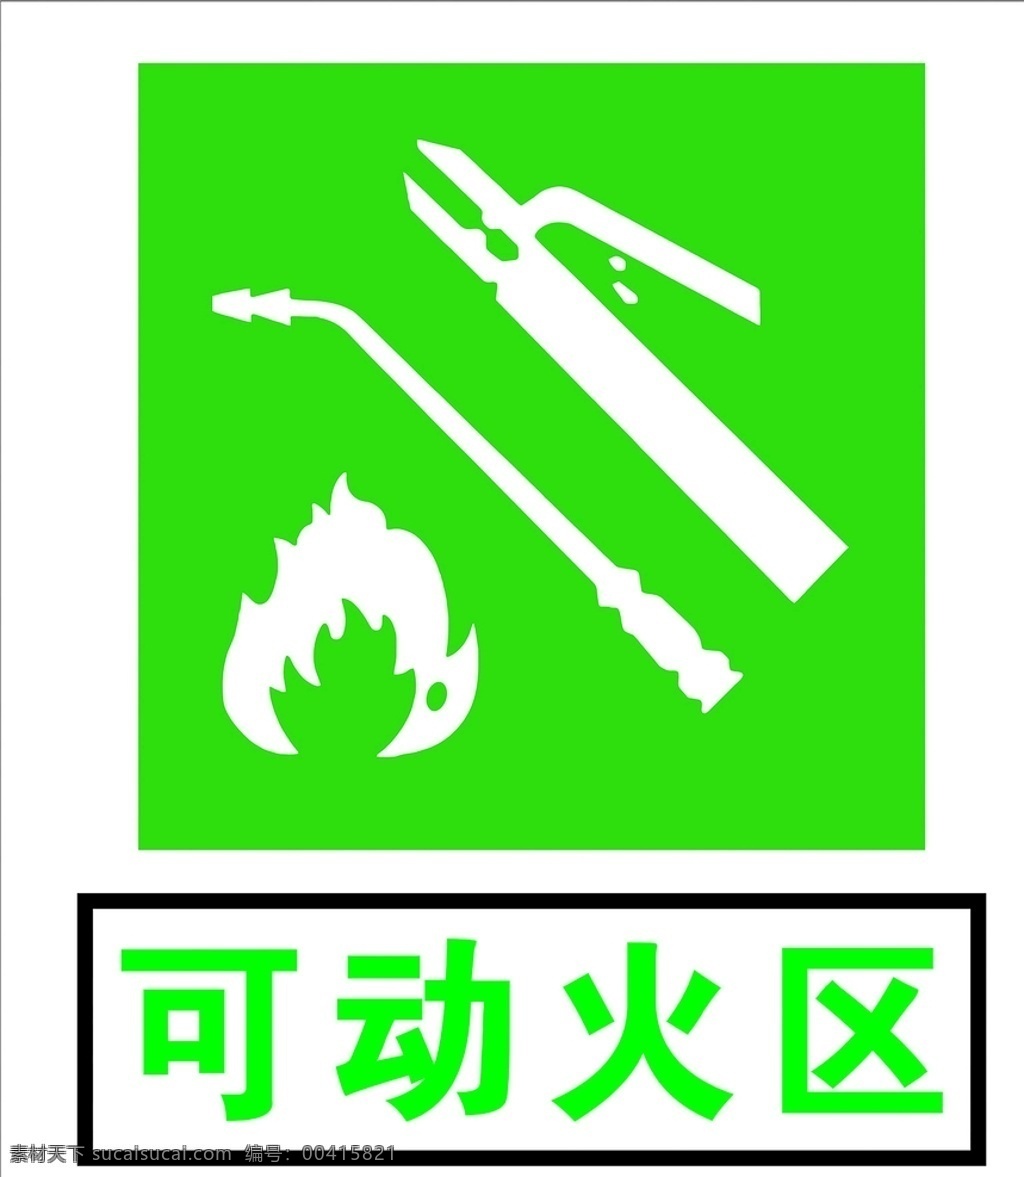 可动火区 安全标识 安全 标识 指示牌 标志 安全标志展板 标志图标 公共标识标志